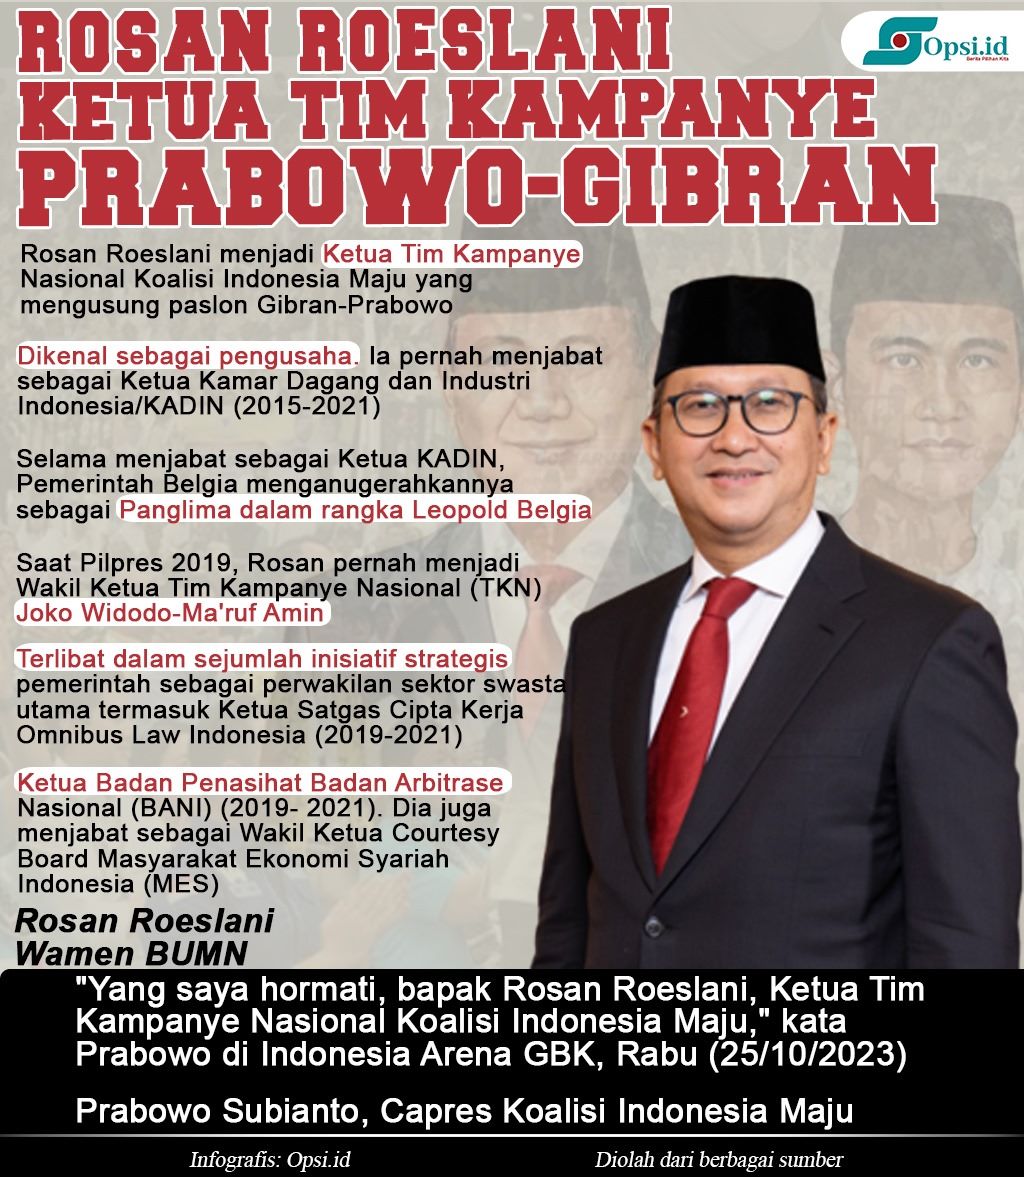 Infografis: Rosan Roeslani, Ketua Tim Kampanye Nasional Prabowo-Gibran